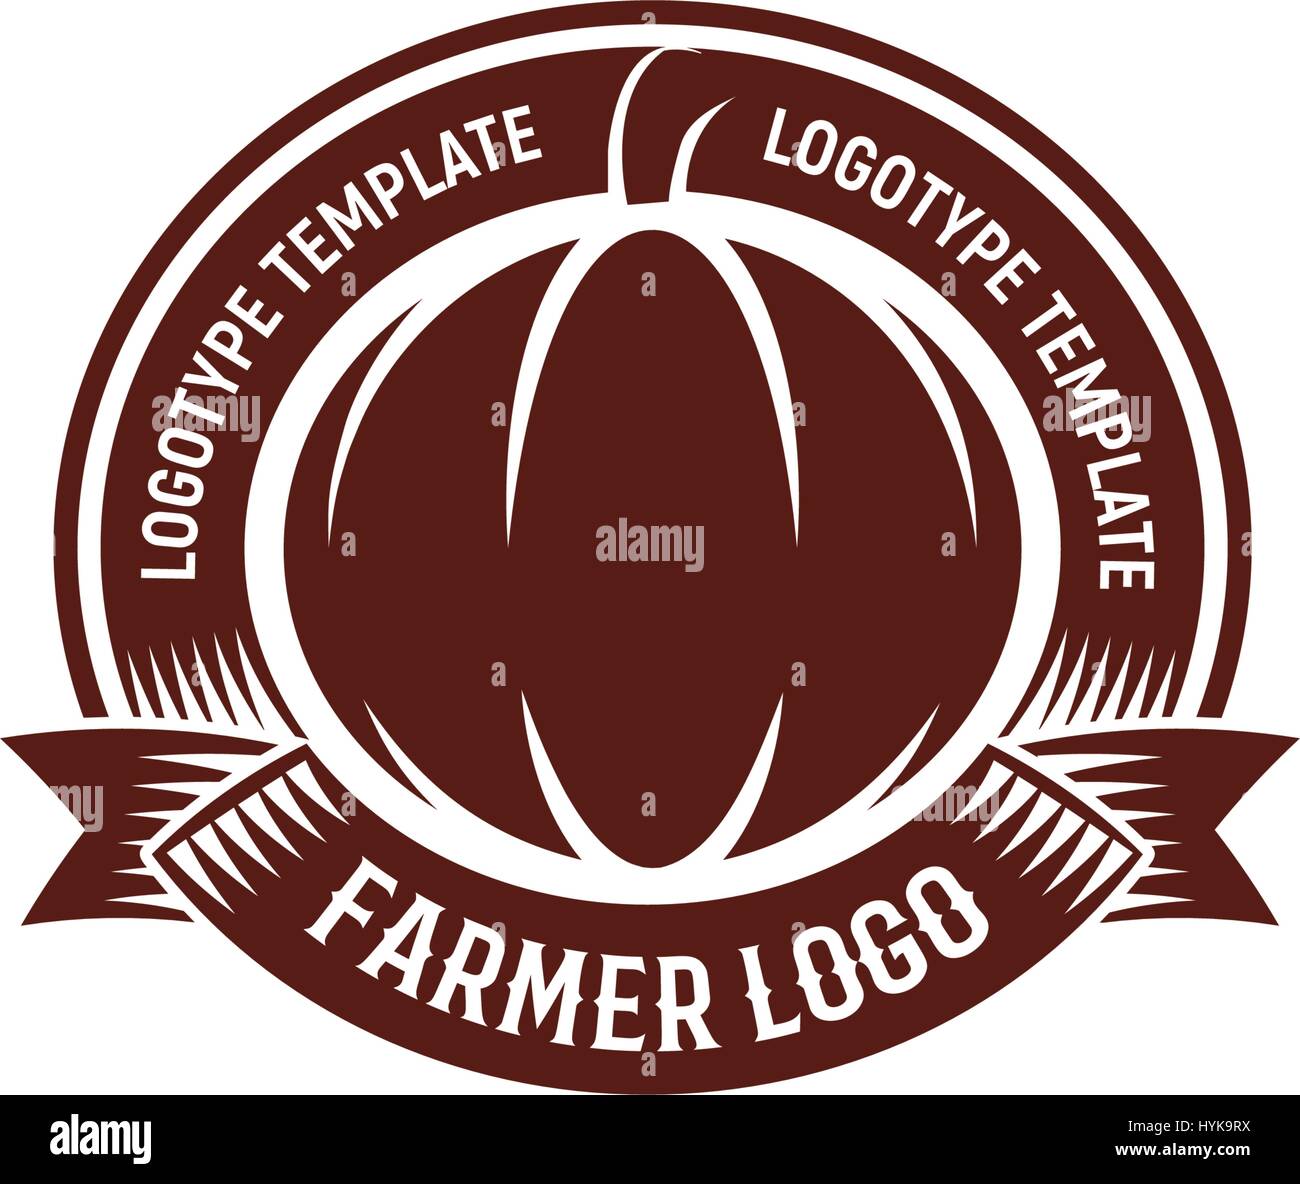 Resumen aislados de forma redonda de color marrón sobre fondo blanco logo de calabaza, agricultura logotipo,otoño vegetales ilustración vectorial Ilustración del Vector